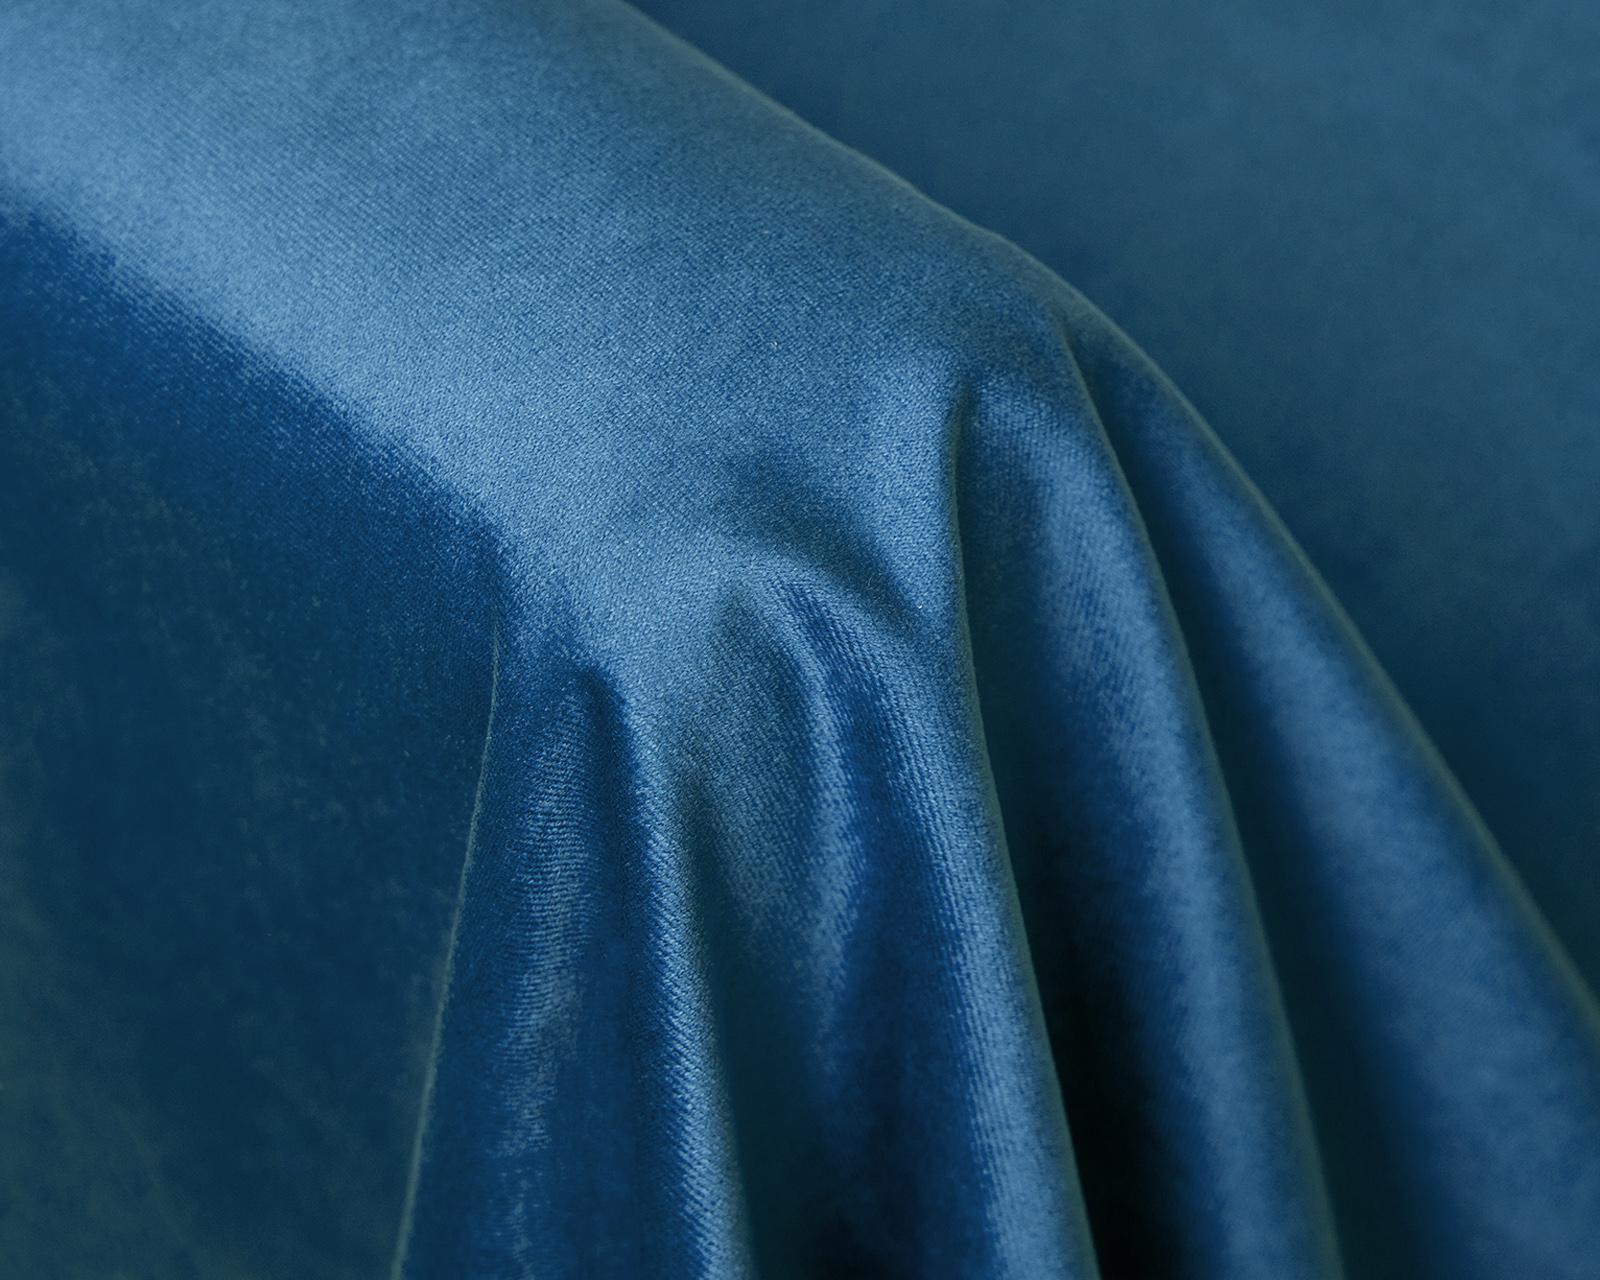 Изображение товара Кровать Альболоте синяя велюр 160х200, 160x200x110 см на сайте adeta.ru